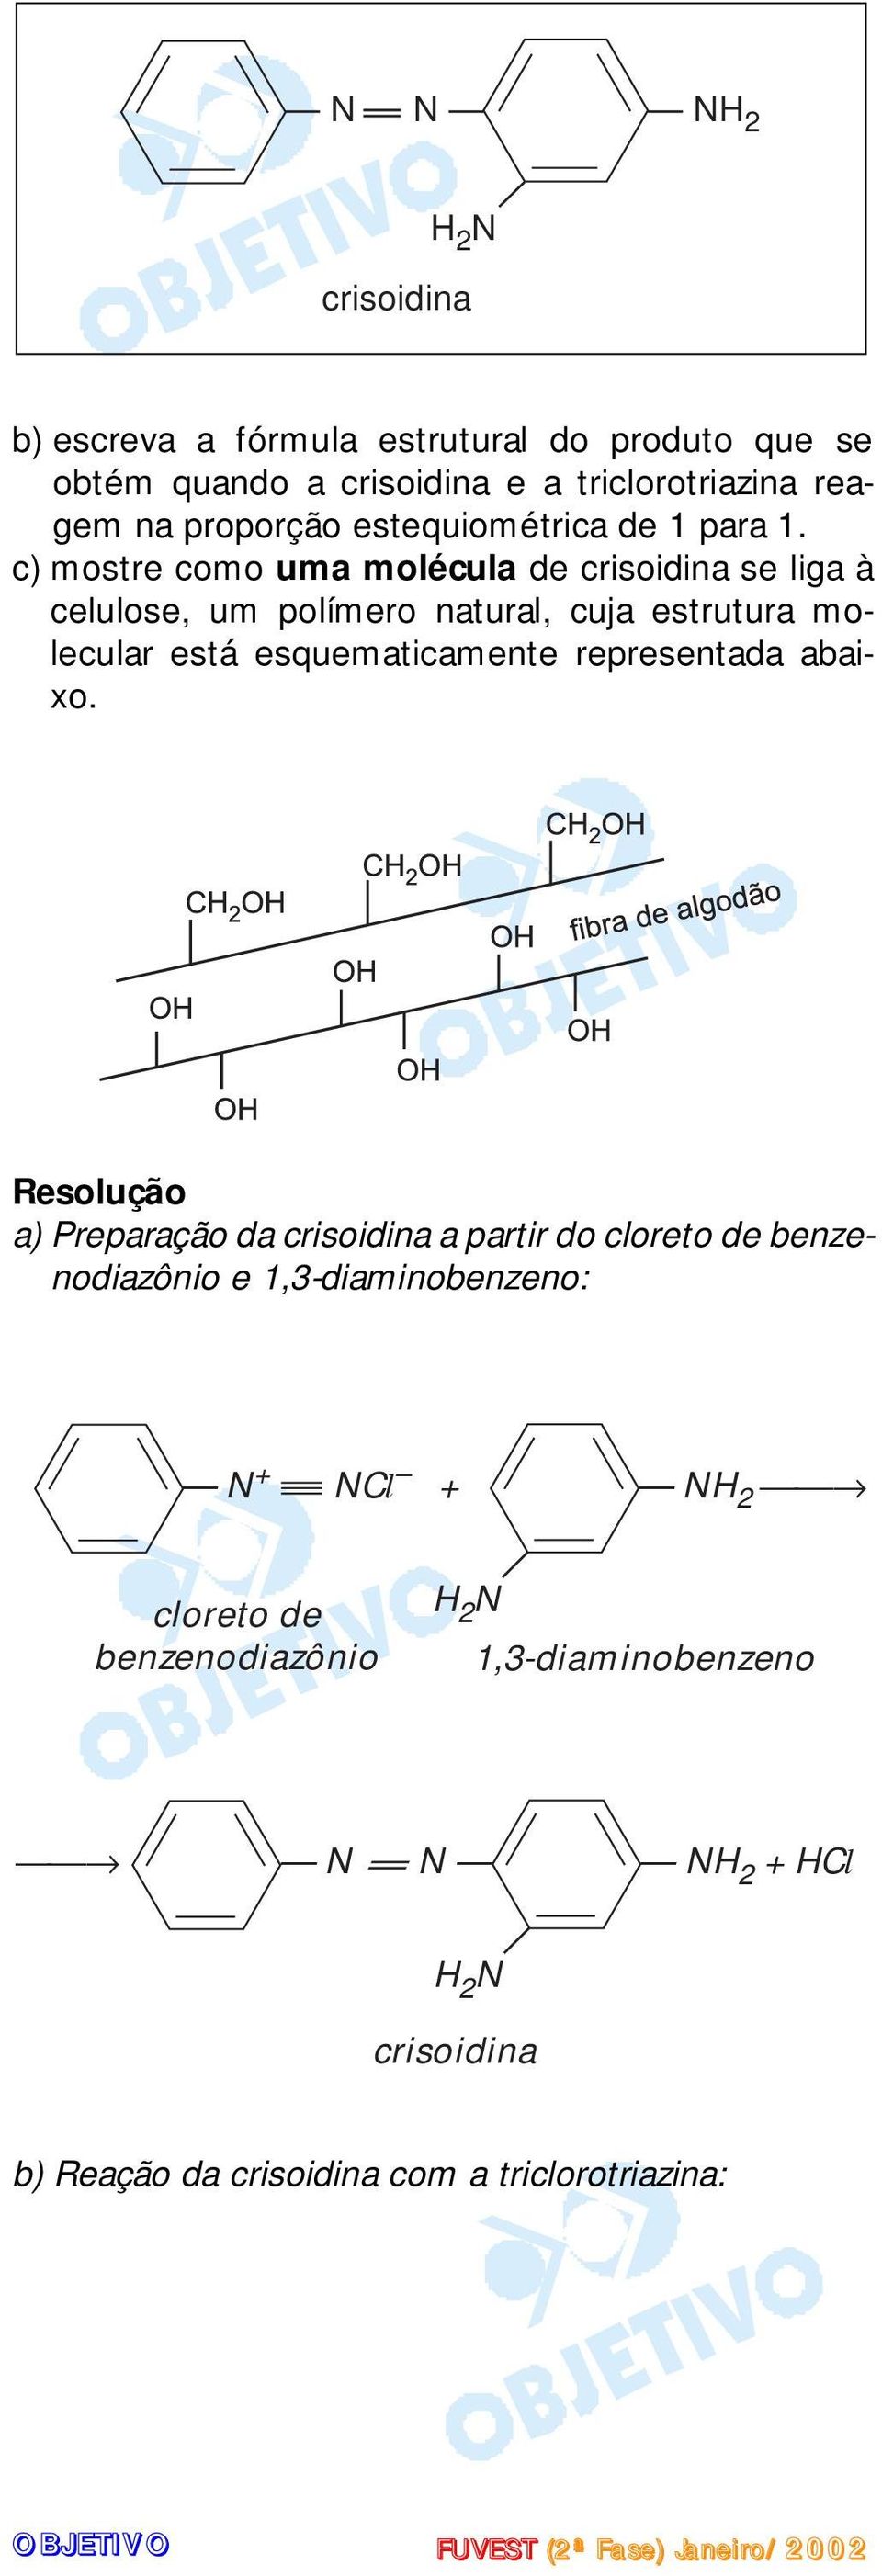 c) mostre como uma molécula de crisoidina se liga à celulose, um polímero natural, cuja estrutura molecular está esquematicamente